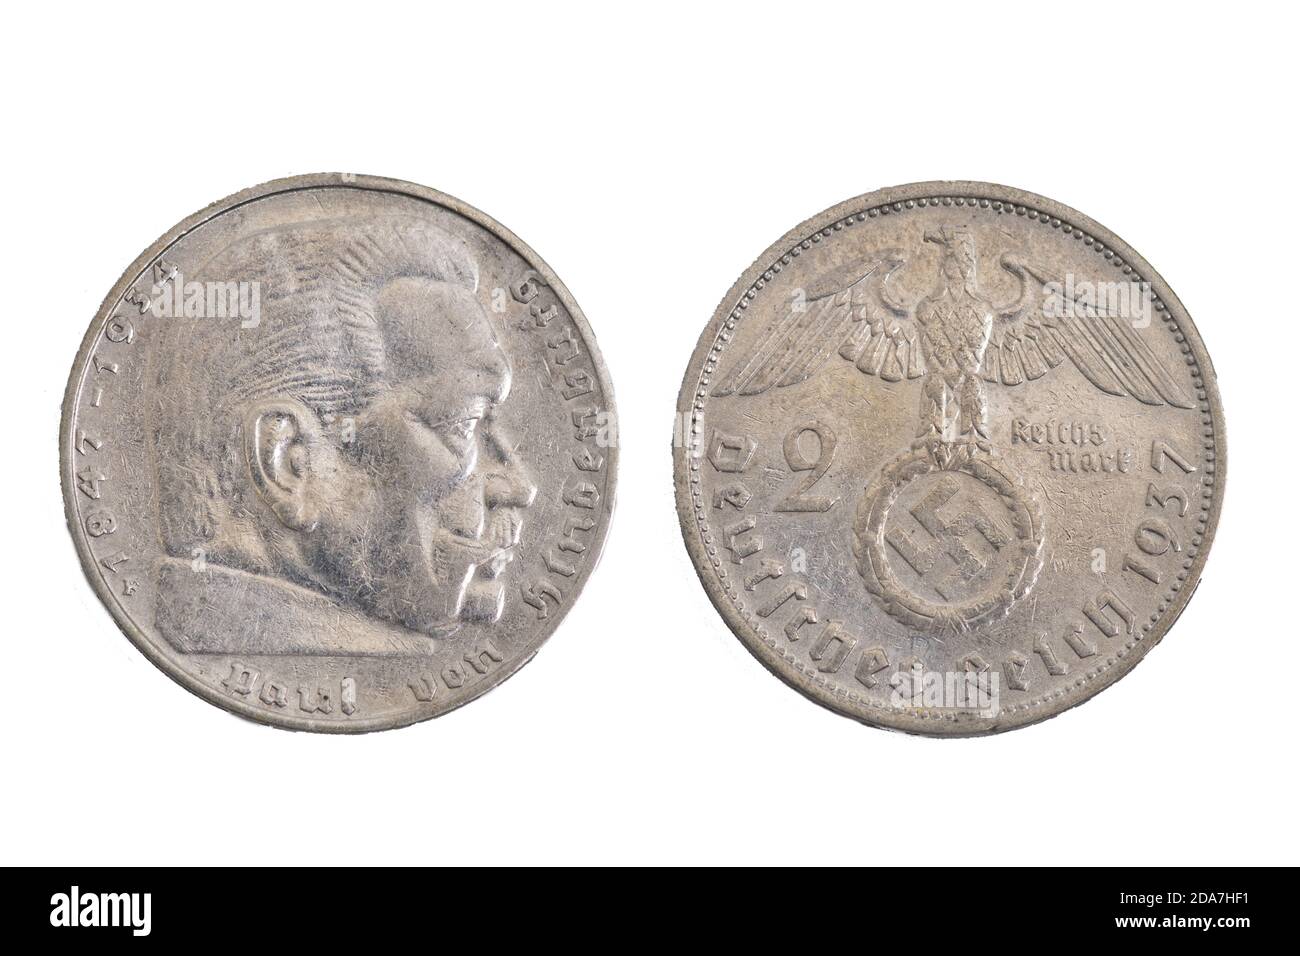 Alemania Alemana Germania Paul Von Hindenburg Plata 1937 Marcas del Reich dinero viejo de la moneda Foto de stock